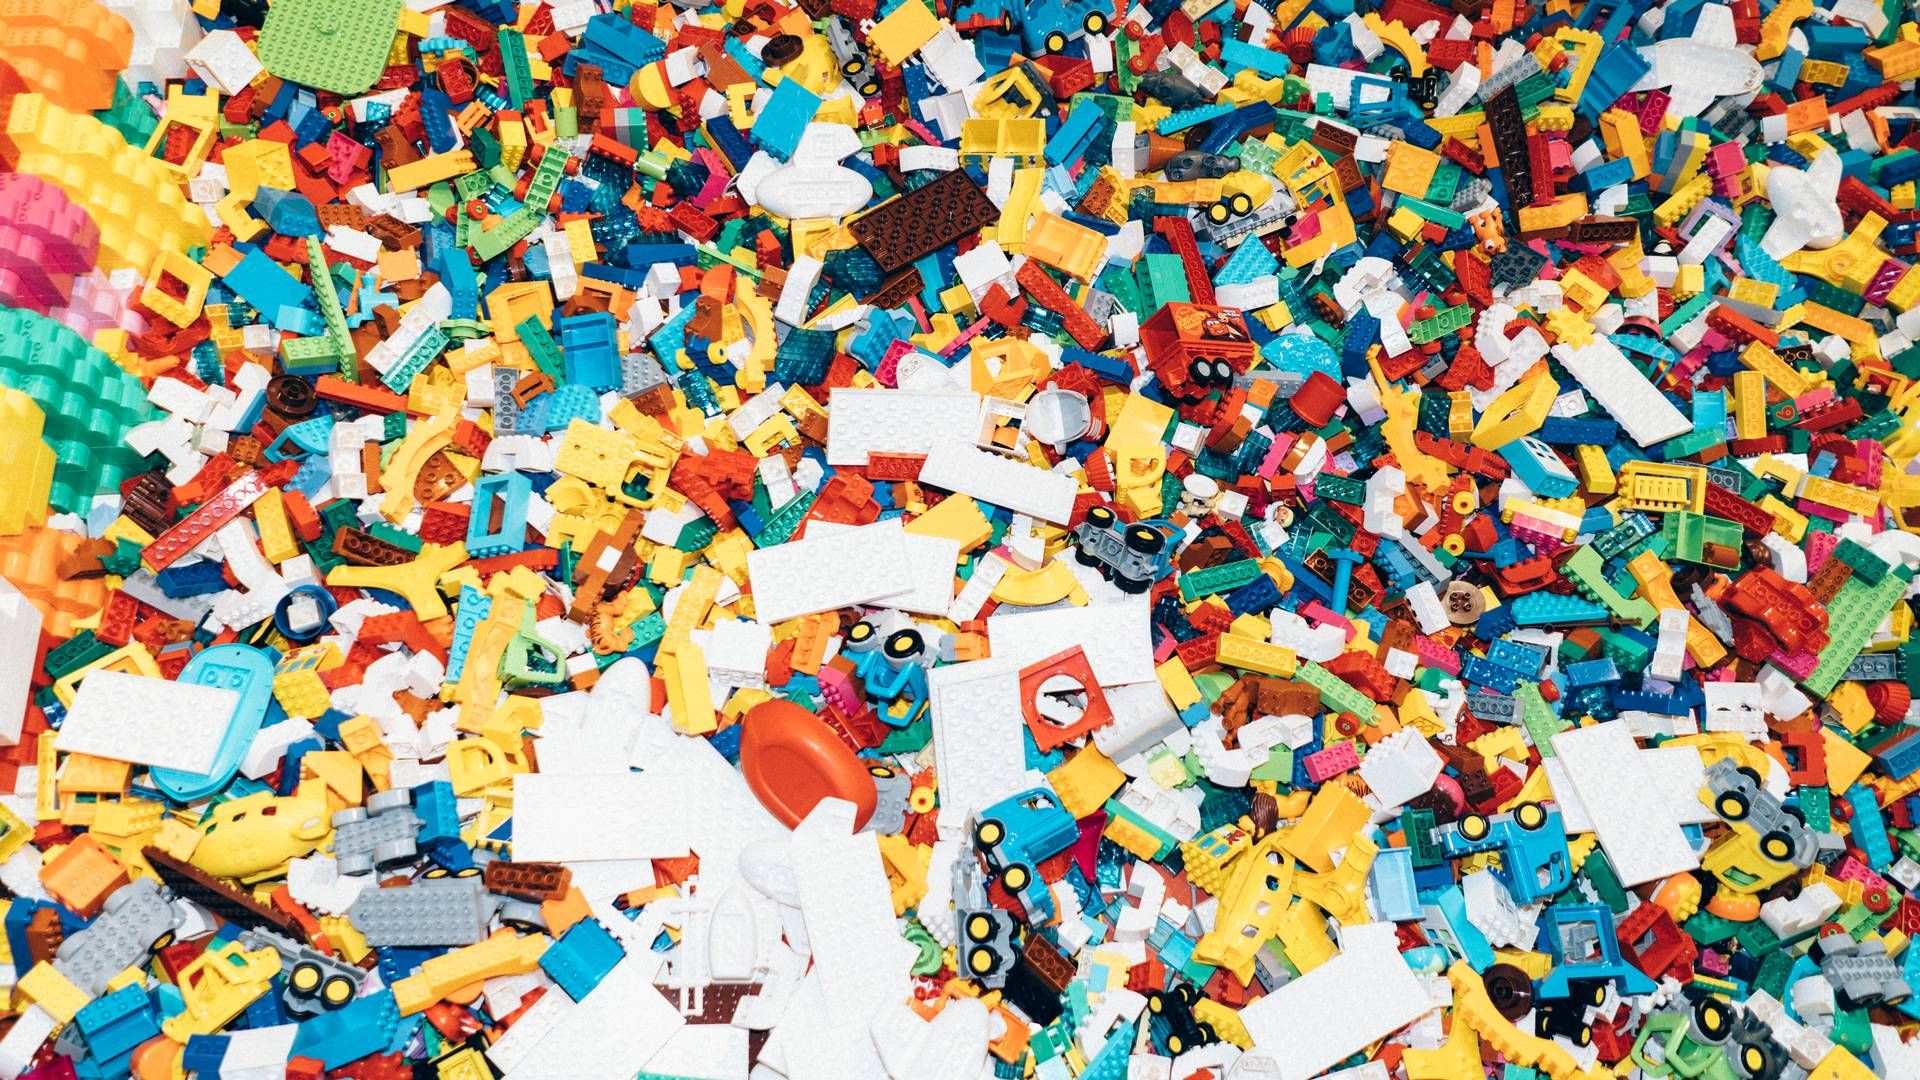 Lego-familien tidligere meldt ud, at man har fokus på at beskytte Lego mod eventuelle familiefejder, og at en fond skulle oprettes i den forbindelse. | Foto: Laura Bisgaard Krogh